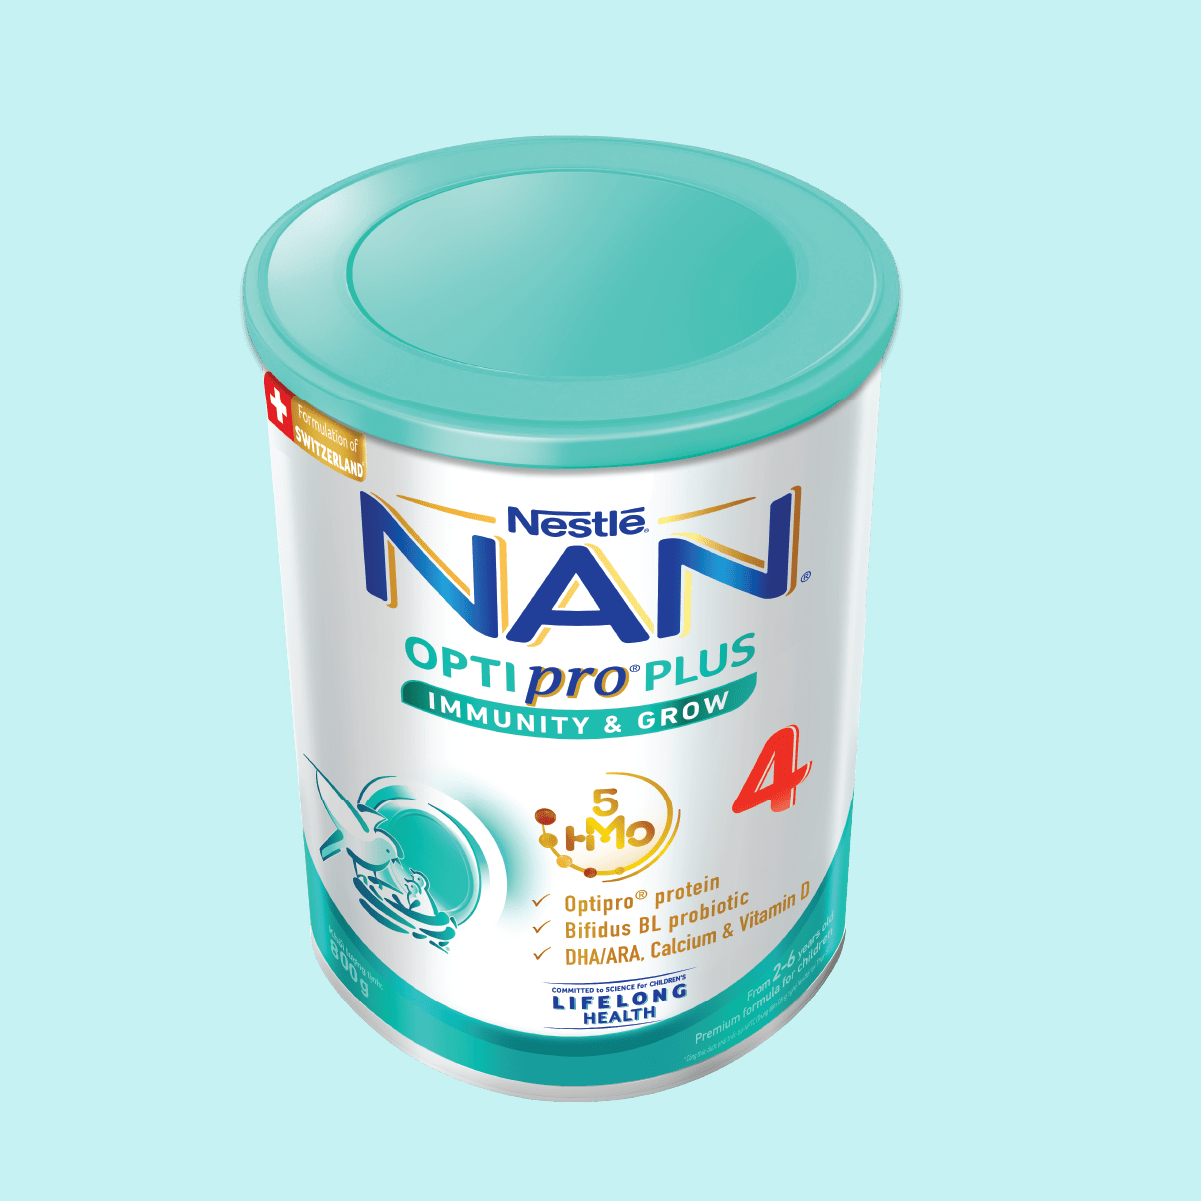 Bộ 2 lon Sữa bột Nestlé NAN OPTIPRO PLUS 4 800g/lon với 5HMO Giúp tiêu hóa tốt + Tăng cường đề kháng + Tặng Gấu bông bé rồng dễ thương - Bé 2-6 tuổi